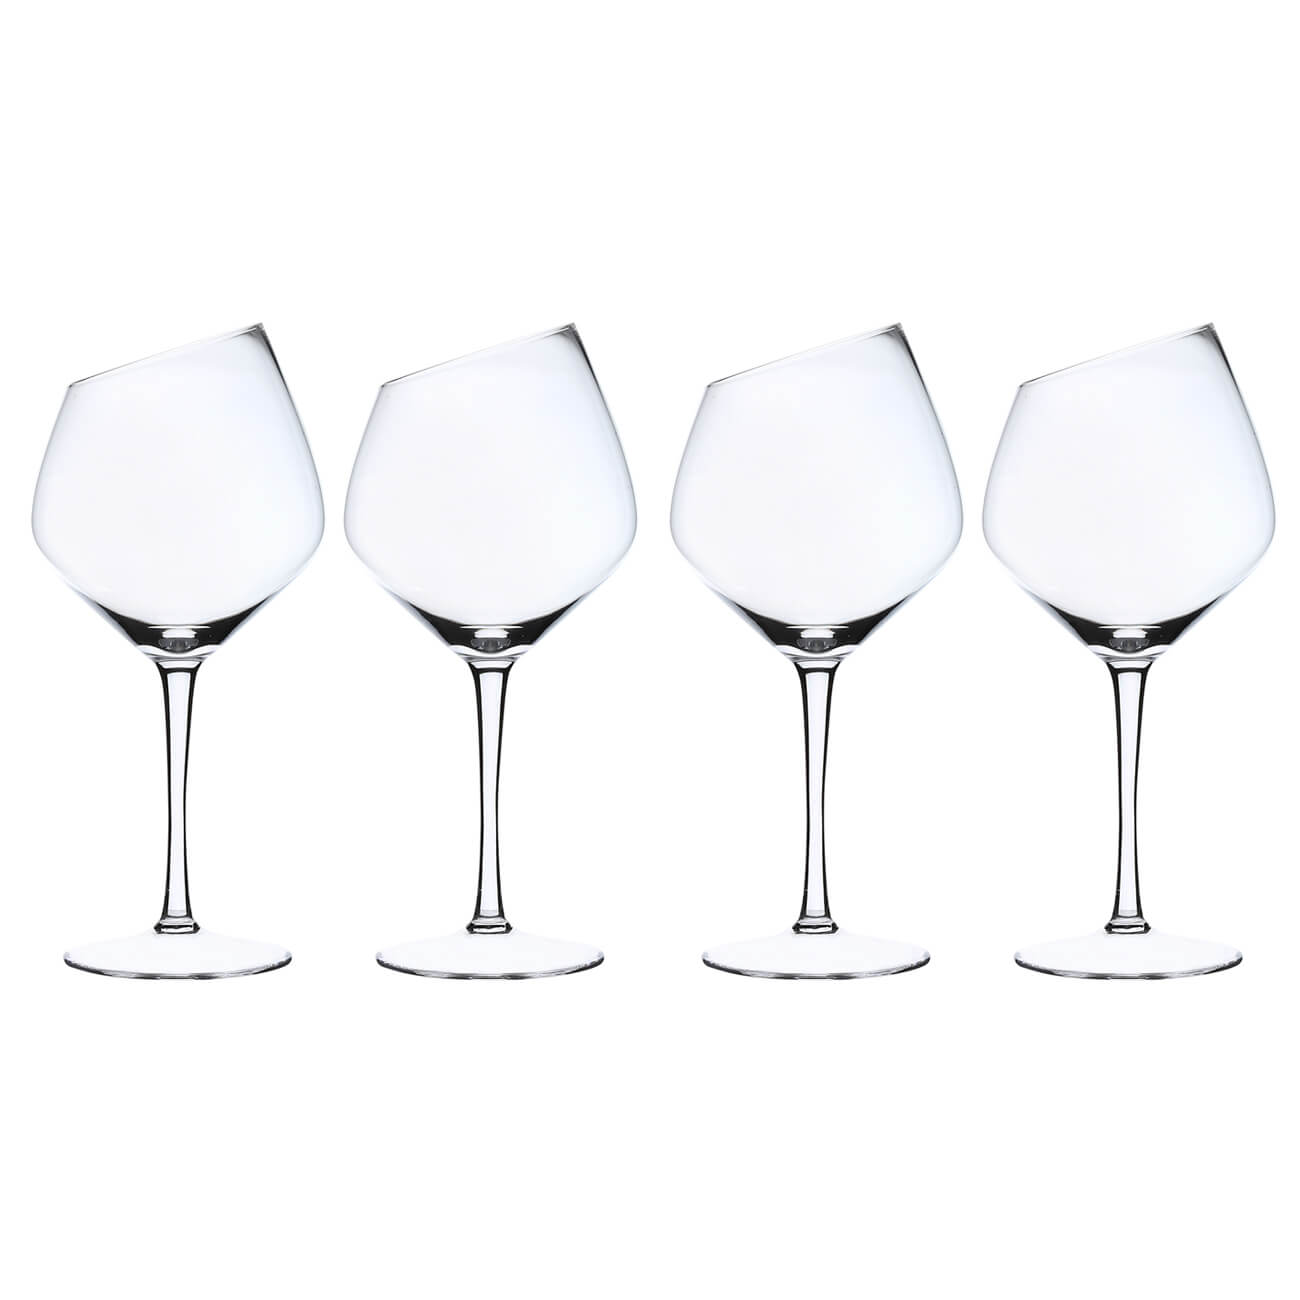 Red wine glass, 560 ml, 4 pcs, Charm L изображение № 1